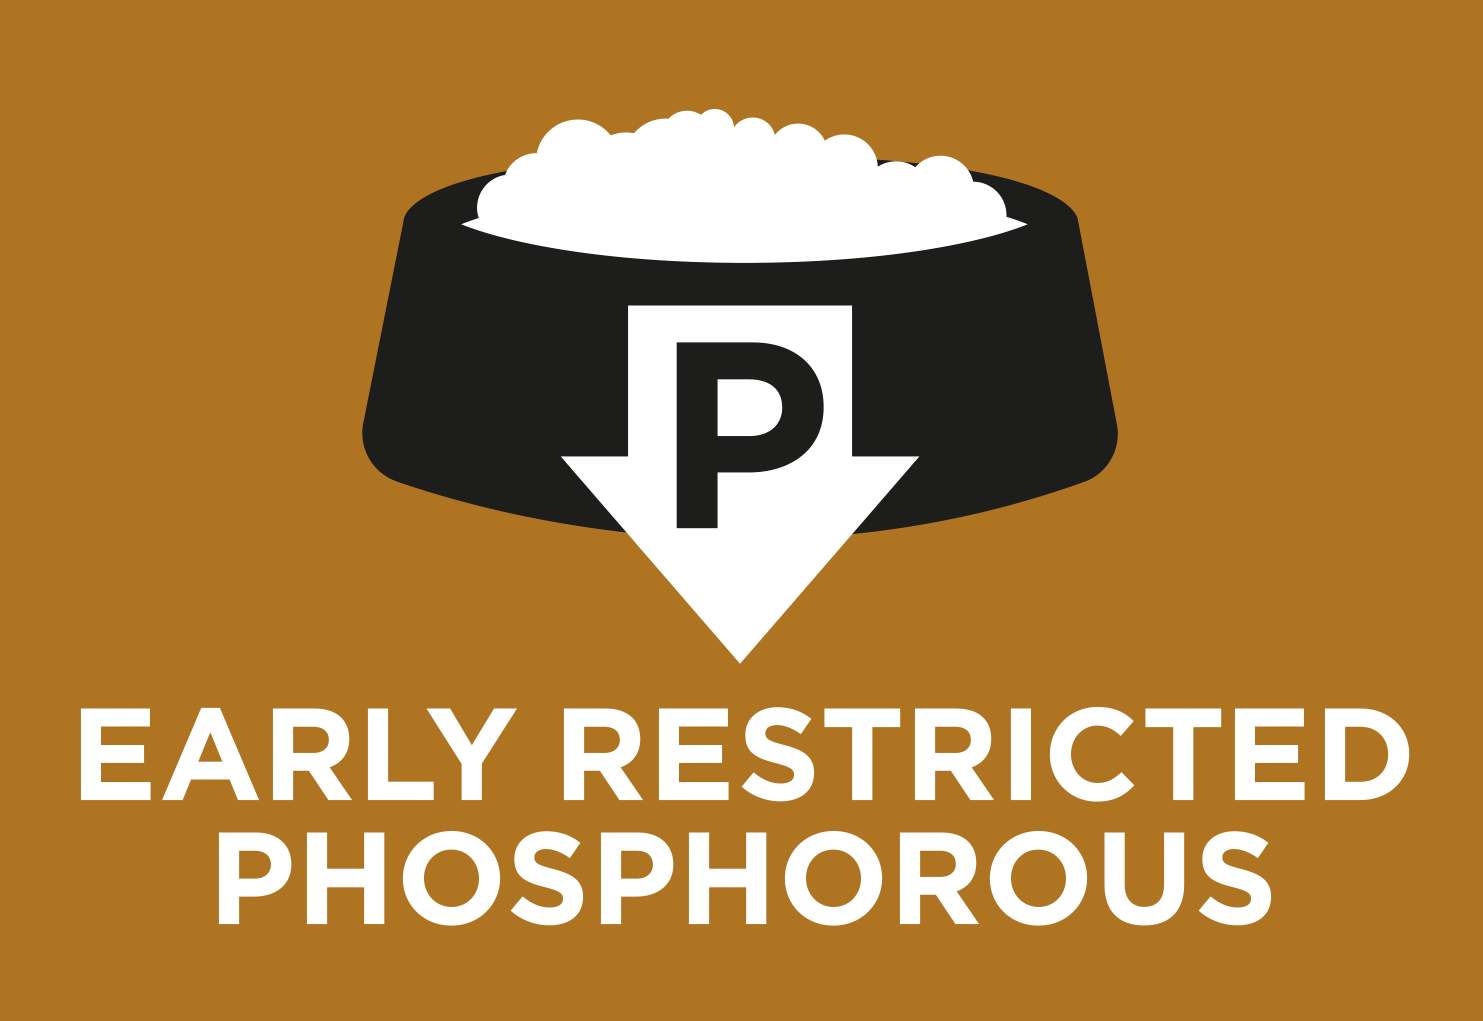 Wczesne ograniczenie poziomu fosforu,
